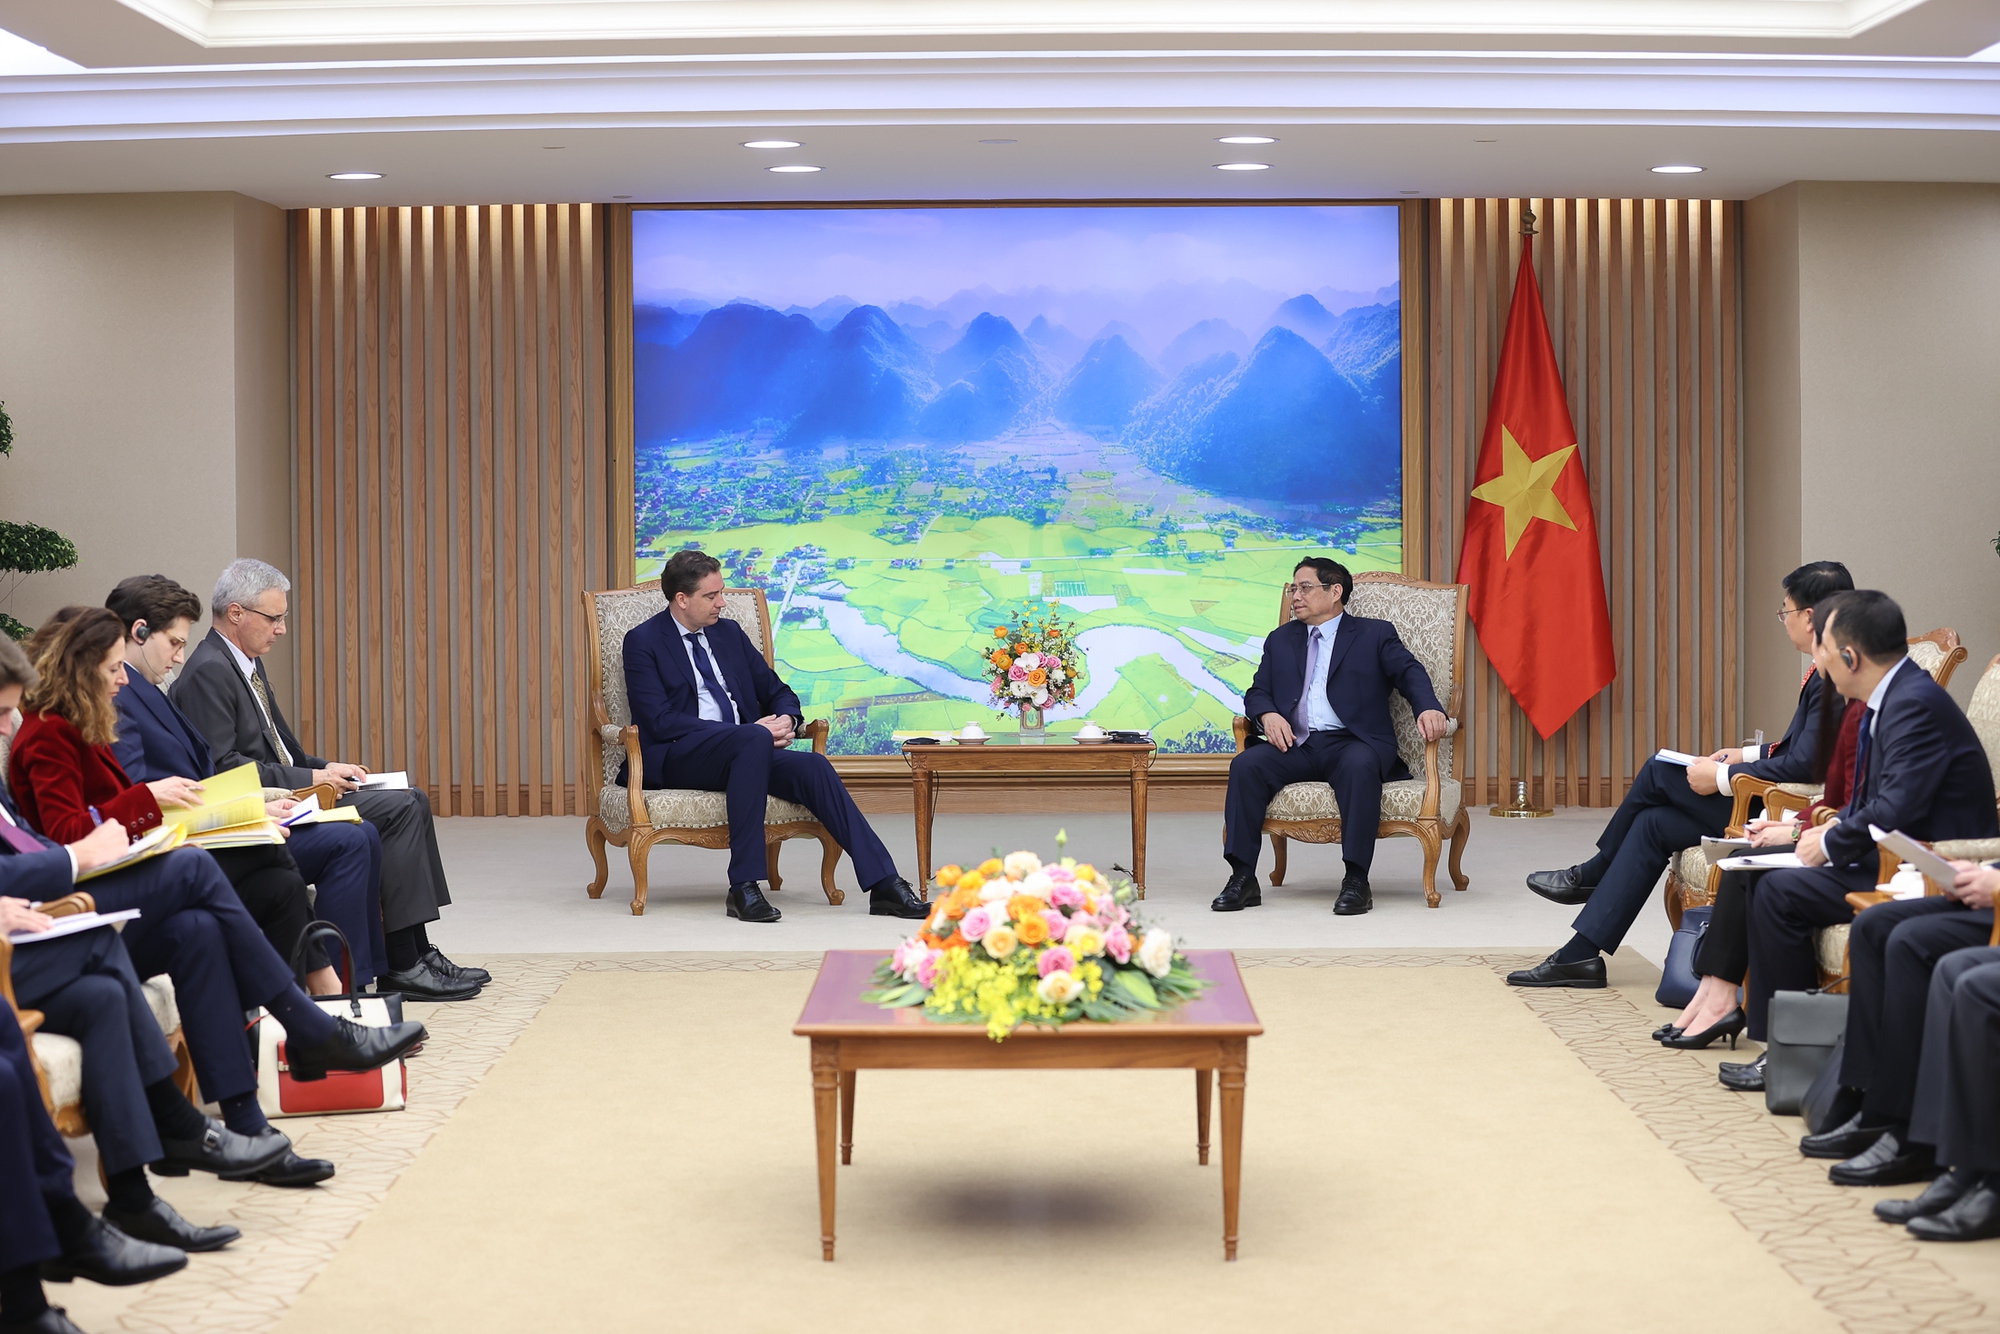 Hợp tác kinh tế, đầu tư, thương mại là trụ cột trong quan hệ Đối tác chiến lược Việt Nam-Pháp